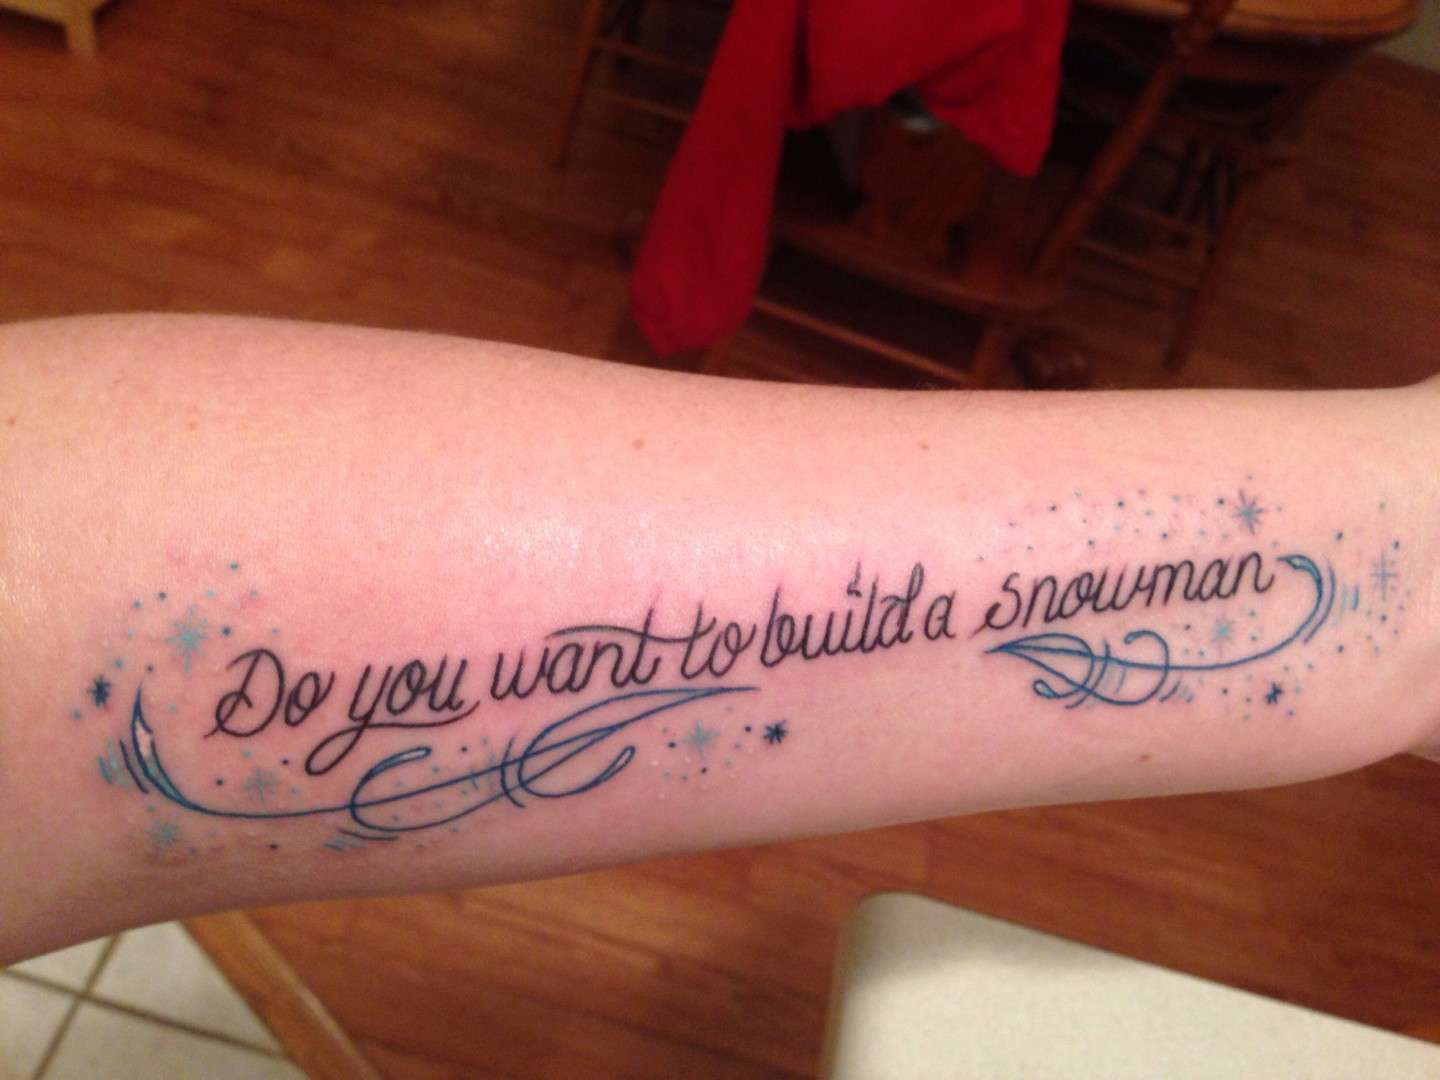 Tatuaggio con scritta "Do you want to build a snowman"